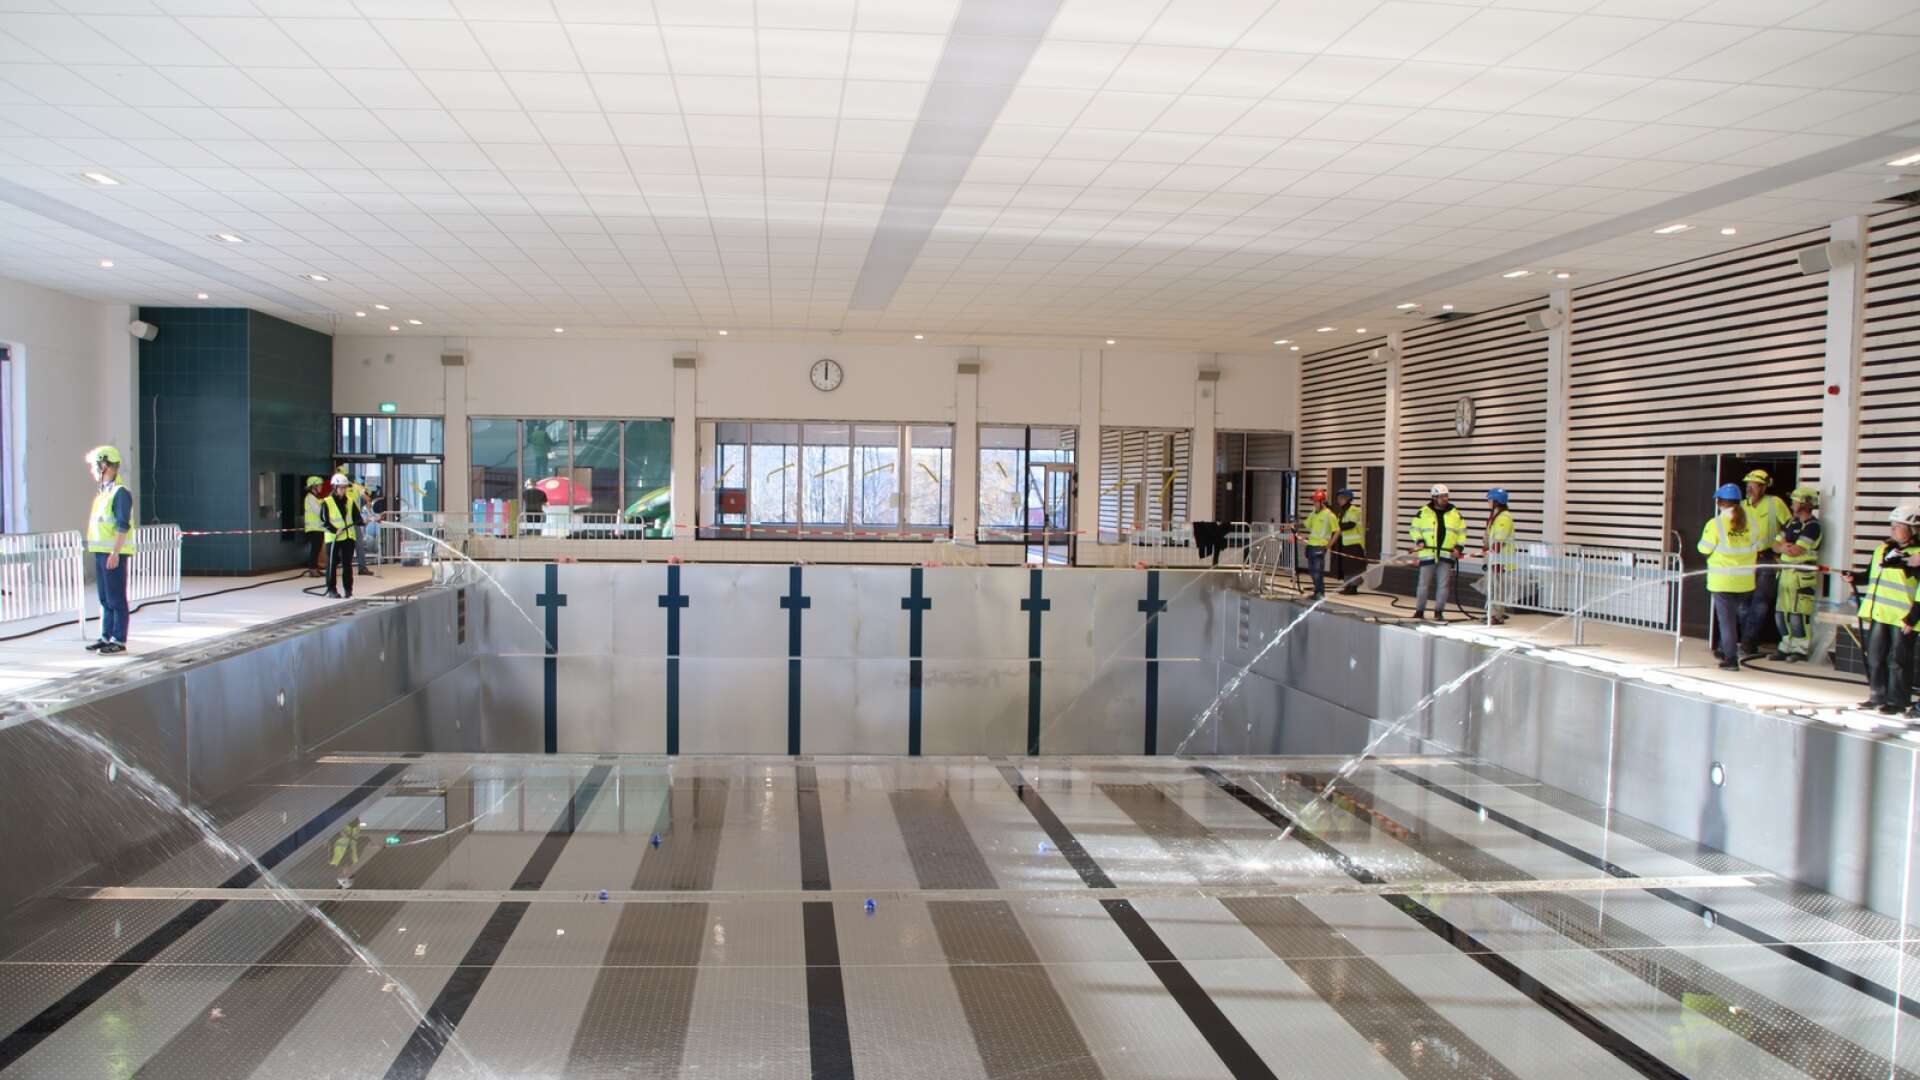 Under fredagen påbörjades vattenfyllningen av simbassängen i nya simhallen i Filipstad. Representanter från NCC fanns på plats för att övervaka påfyllningen. 